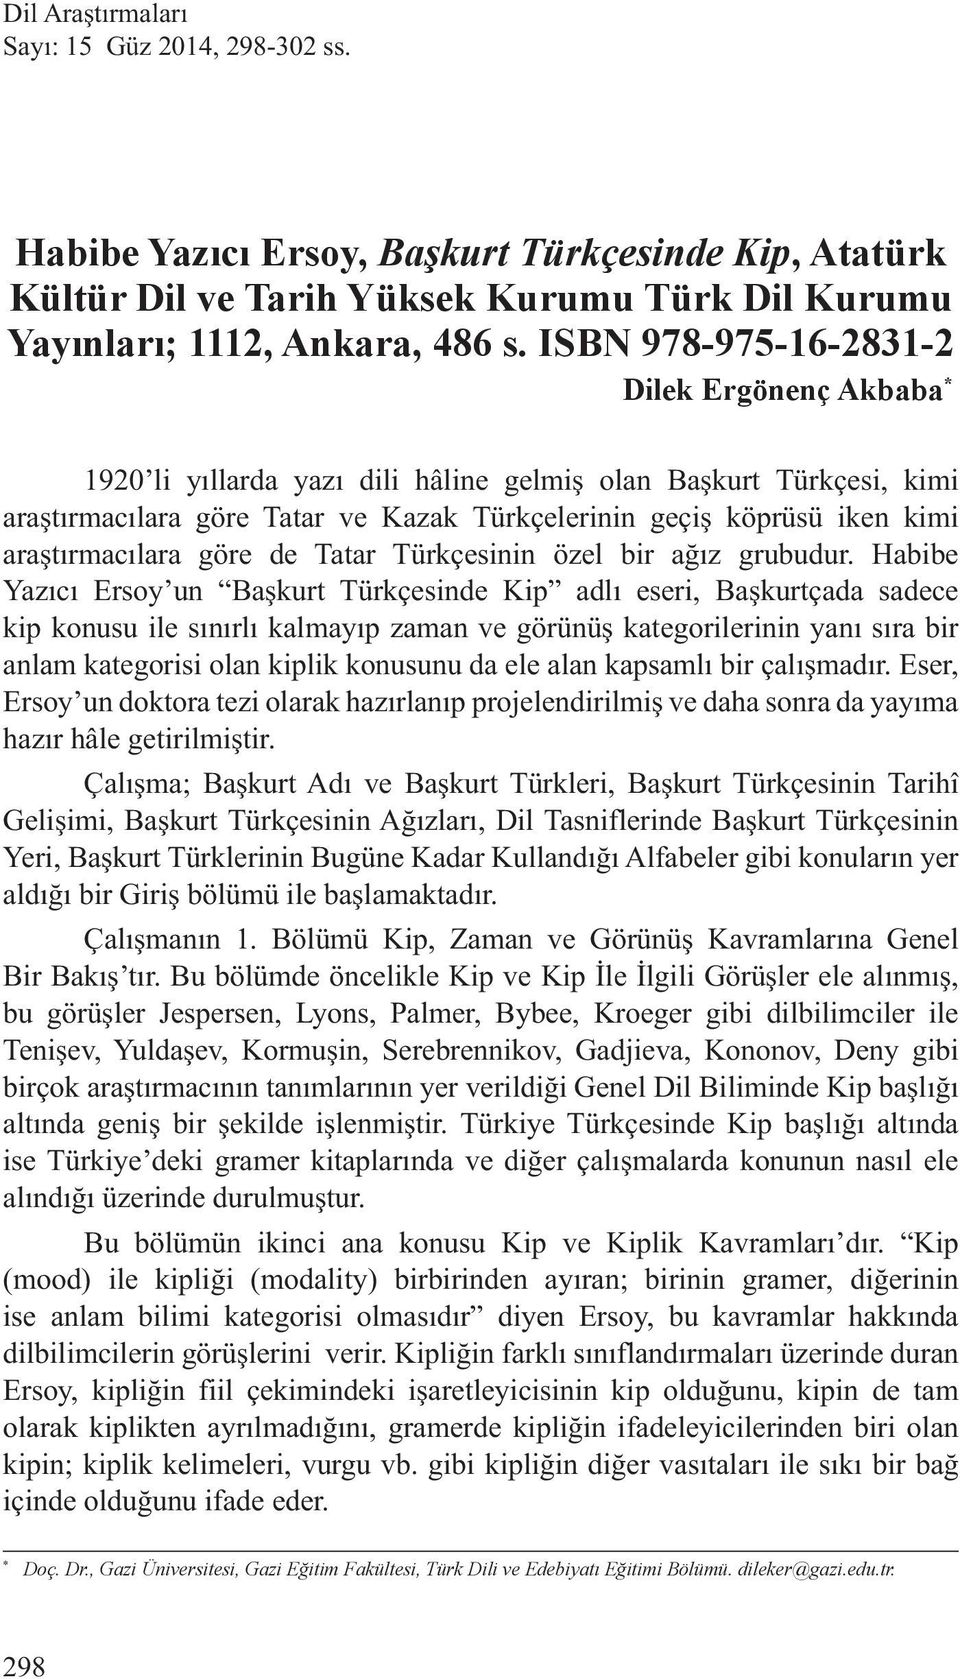 araştırmacılara göre de Tatar Türkçesinin özel bir ağız grubudur.